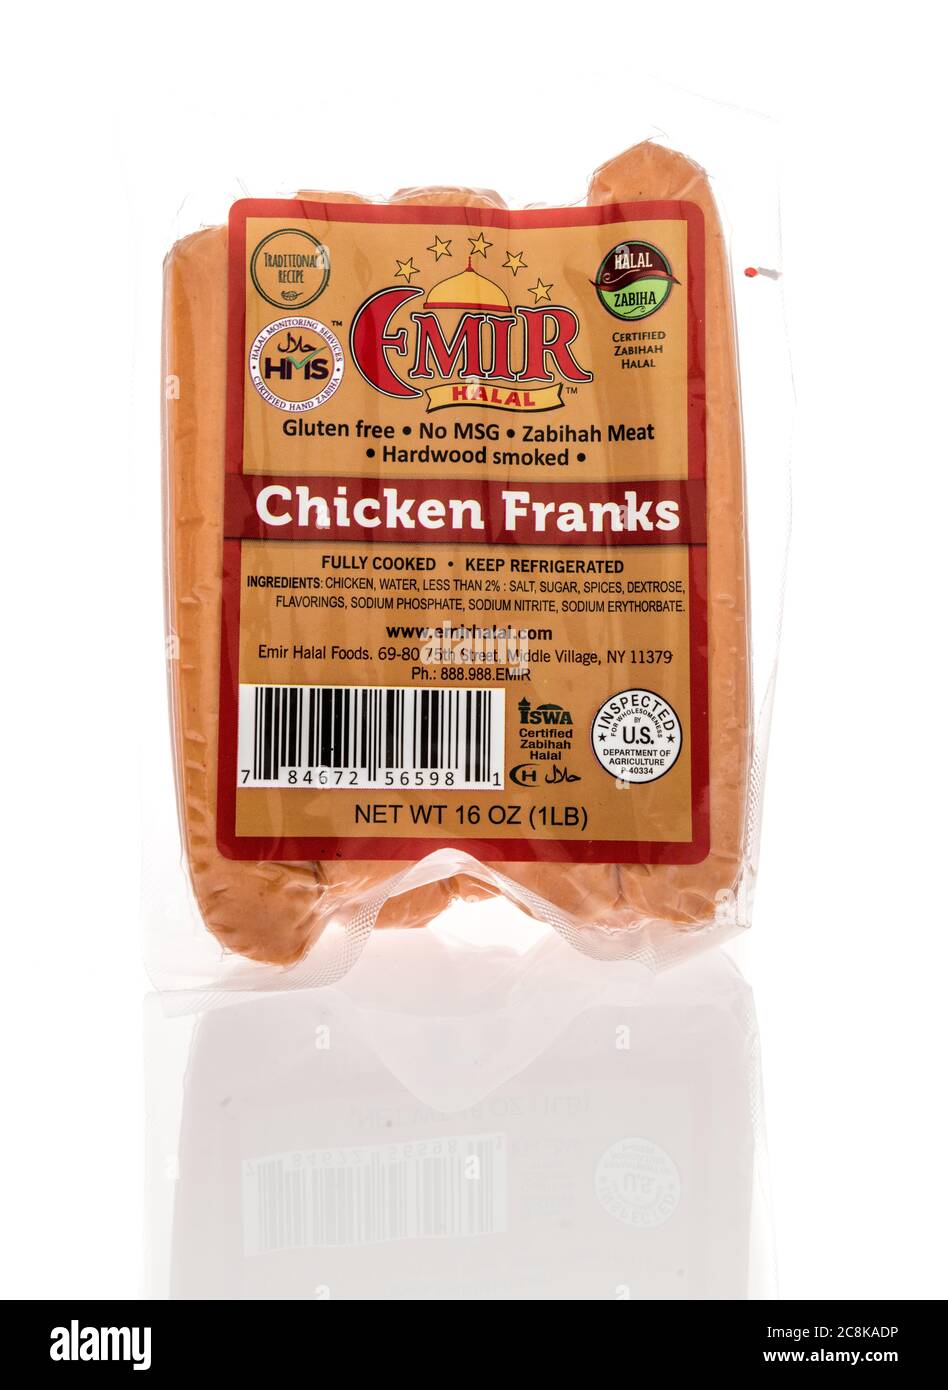 Winneconne, WI - 24. Juli 2020: Ein Paket von Emir Halal hühnerfränkchen auf einem isolierten Hintergrund Stockfoto